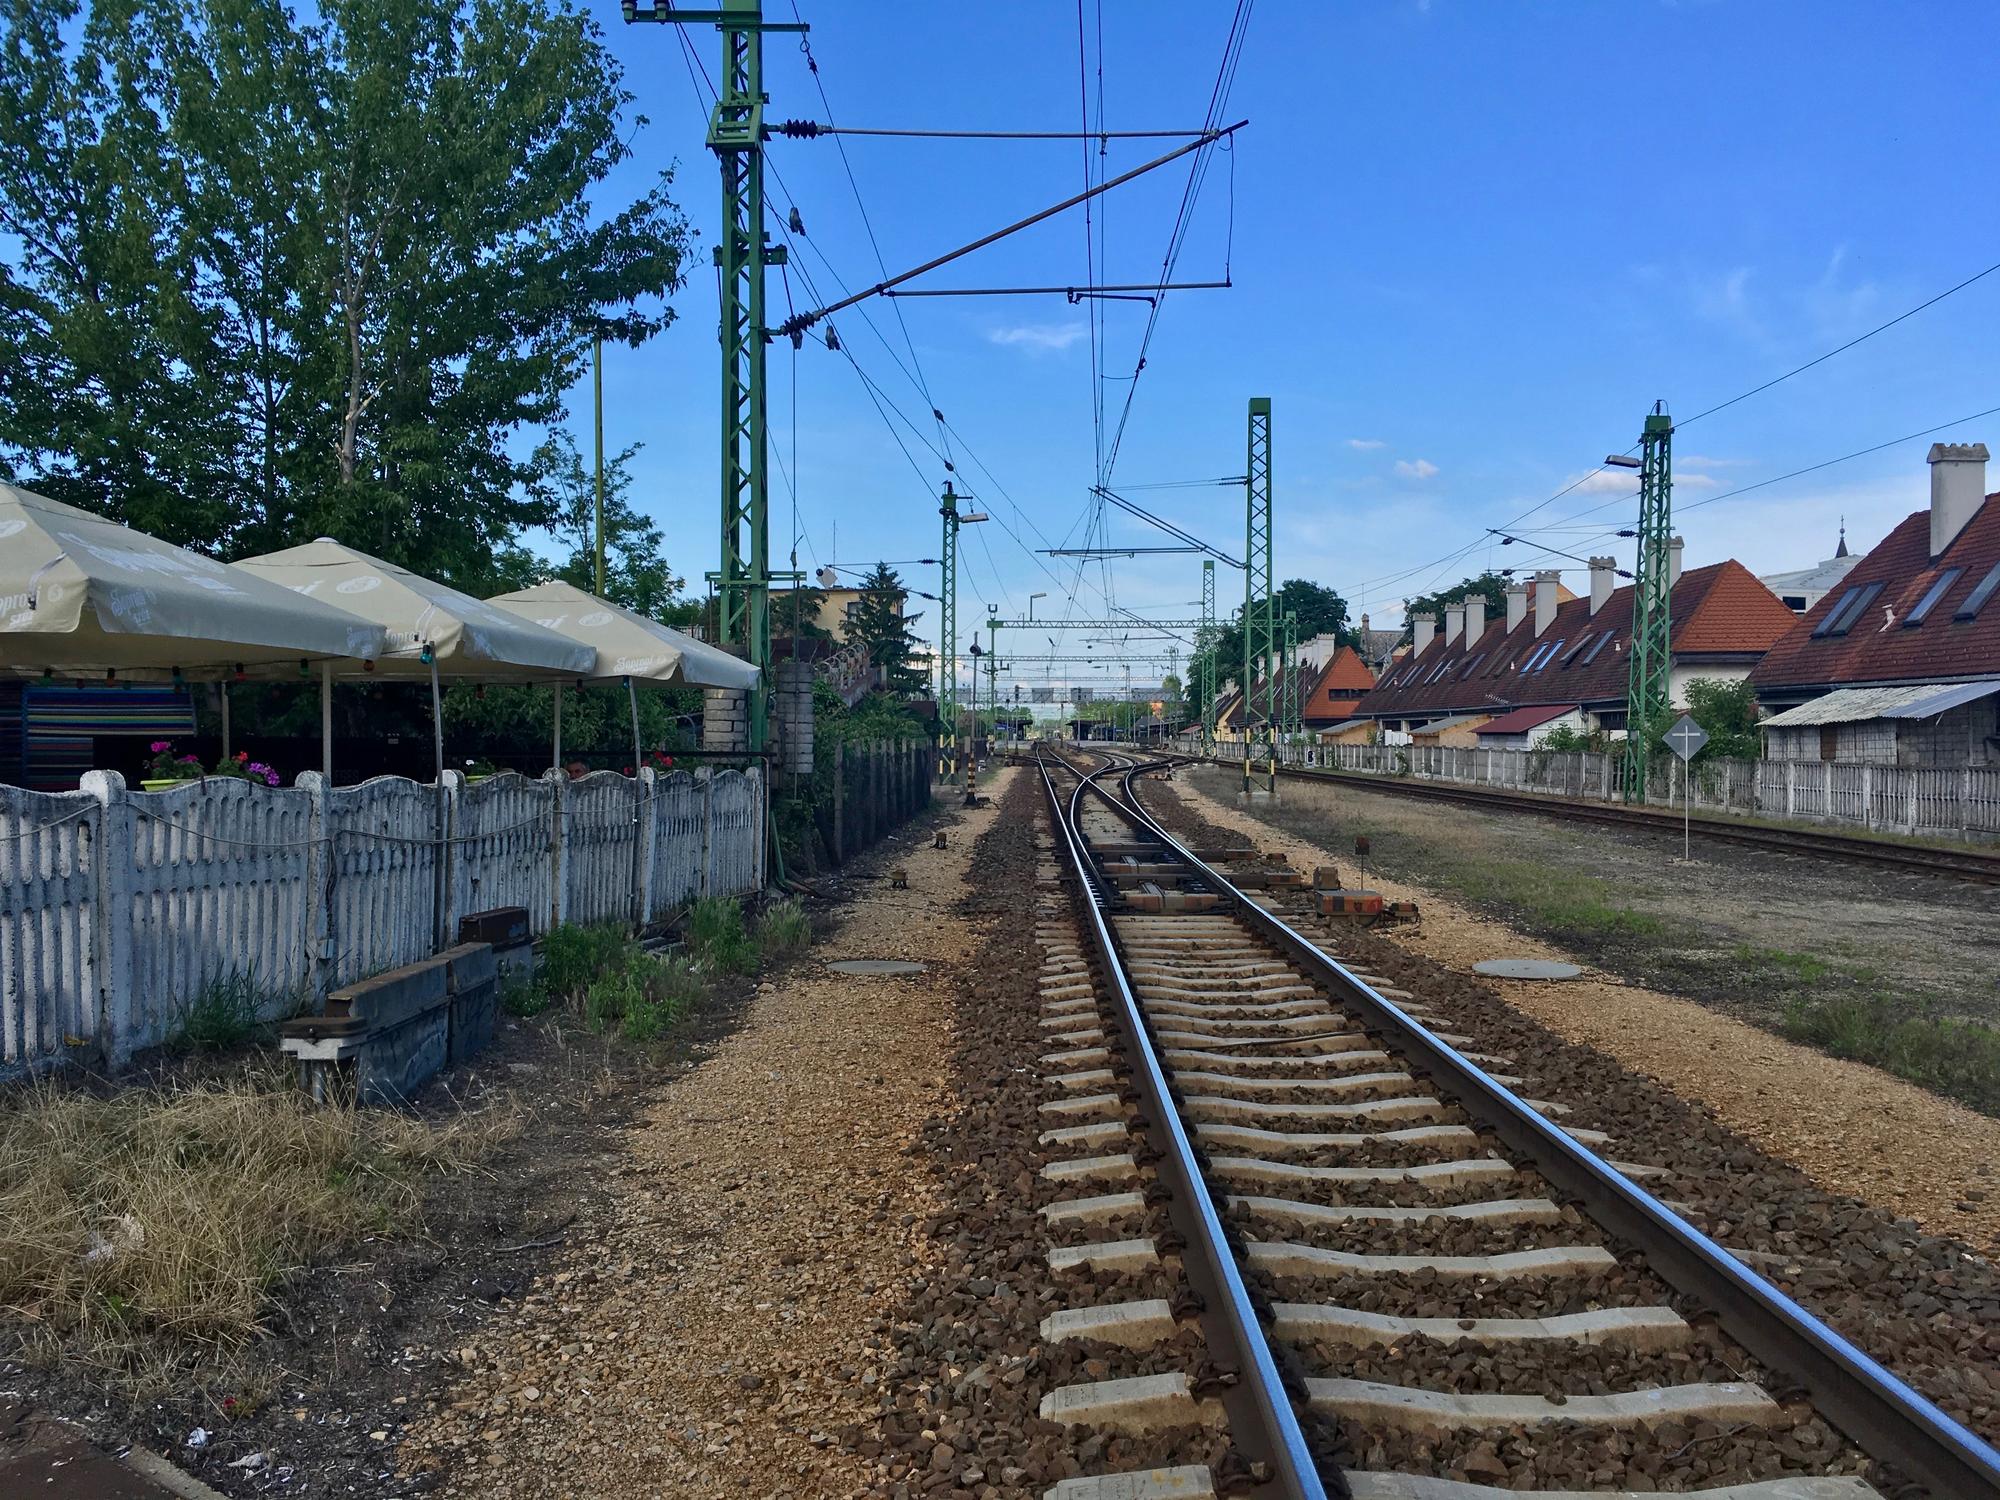 🇭🇺 Siofok, Hungary, May 2019.